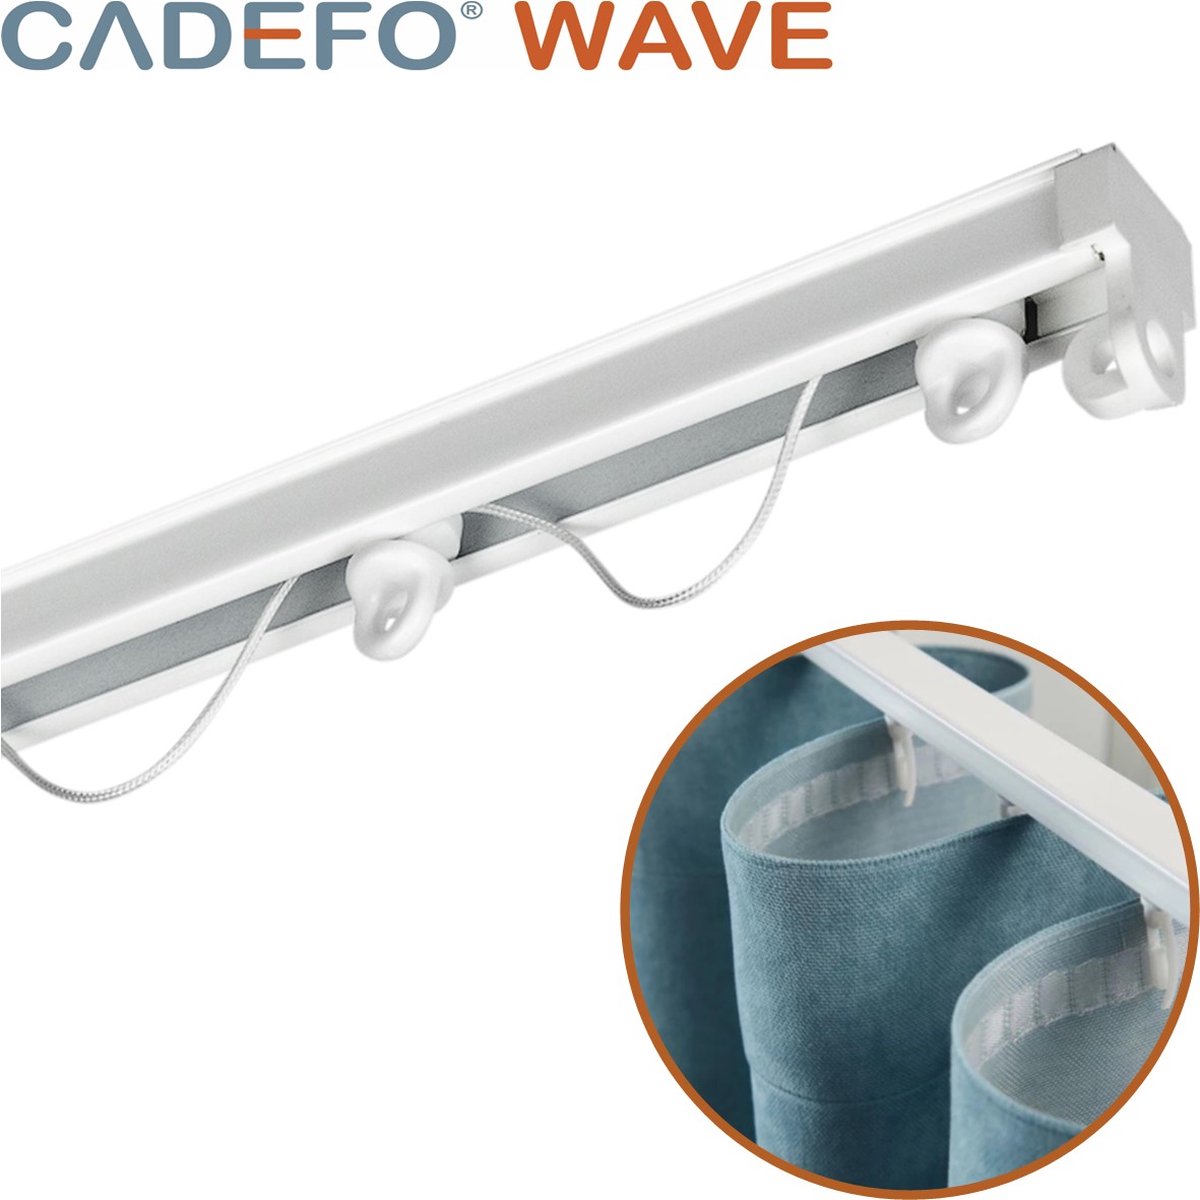 CADEFO WAVE (151 - 200 cm) Gordijnrails - Compleet op maat! - UIT 1 STUK - Leverbaar tot 6 meter - Plafondbevestiging - Lengte 164 cm